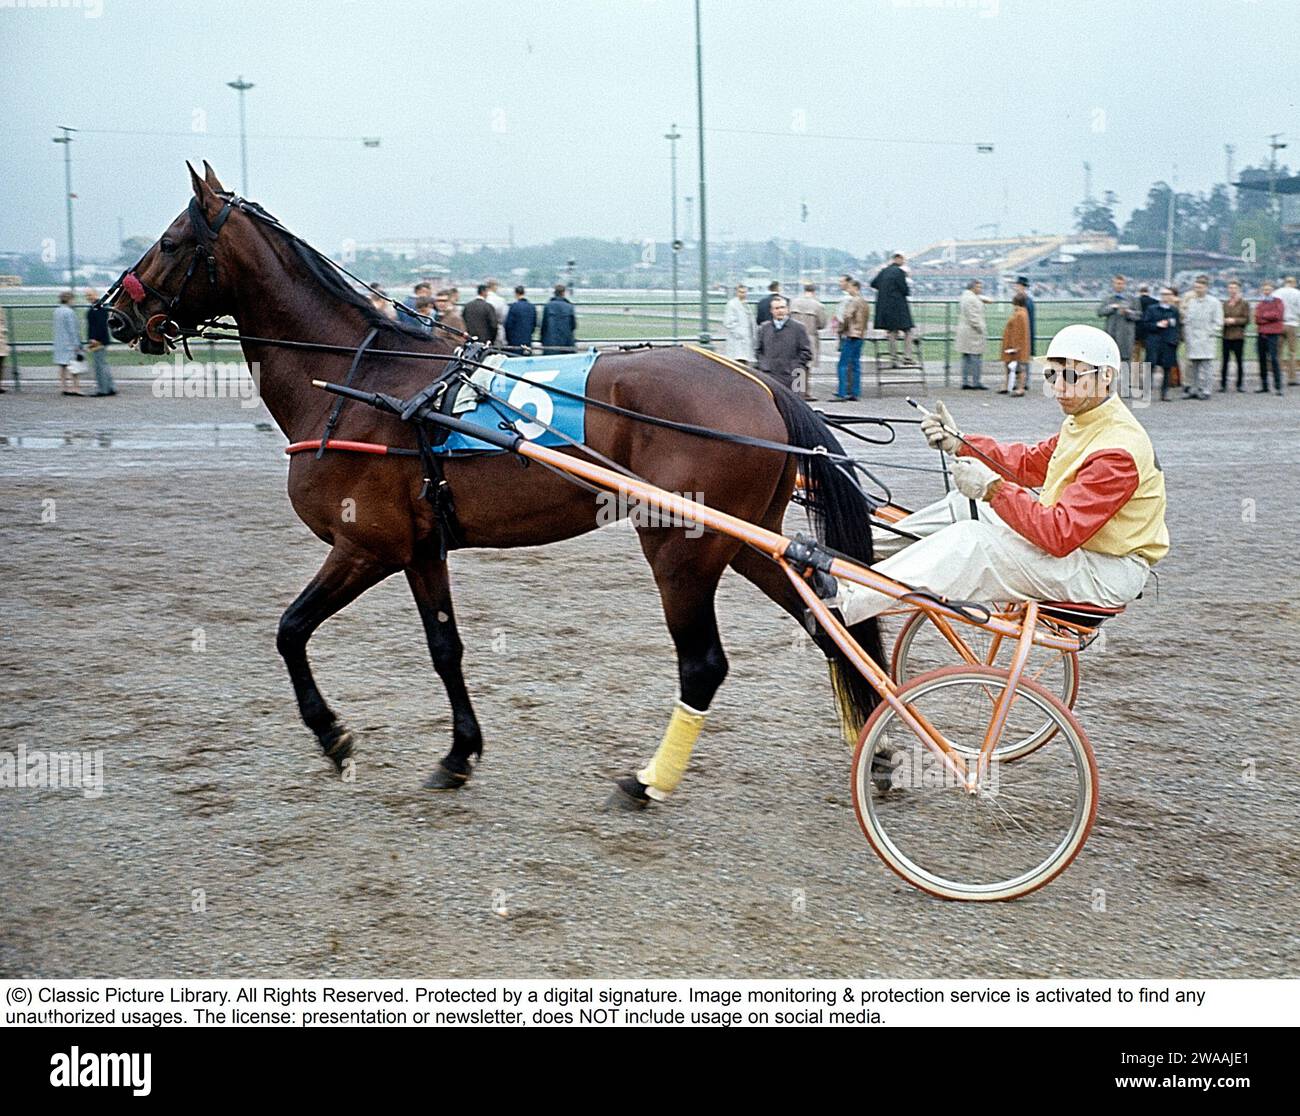 Olle Elfstrand. Entraîneur de trot suédois et jockey. Au cours de sa carrière, il a réussi l'exploit de remporter plus de 2000 courses en tant que jockey. Ici dans le sulky avec le cheval de Trotting Lyon qu'il a entraîné pendant la majeure partie de sa carrière de coureur. Lyon a été sélectionné comme cheval de l'année à trois reprises et est devenu le premier cheval de trot d'origine suédoise à atteindre un million de couronnes suédoises en prix. 1972 réf. BV9 Banque D'Images